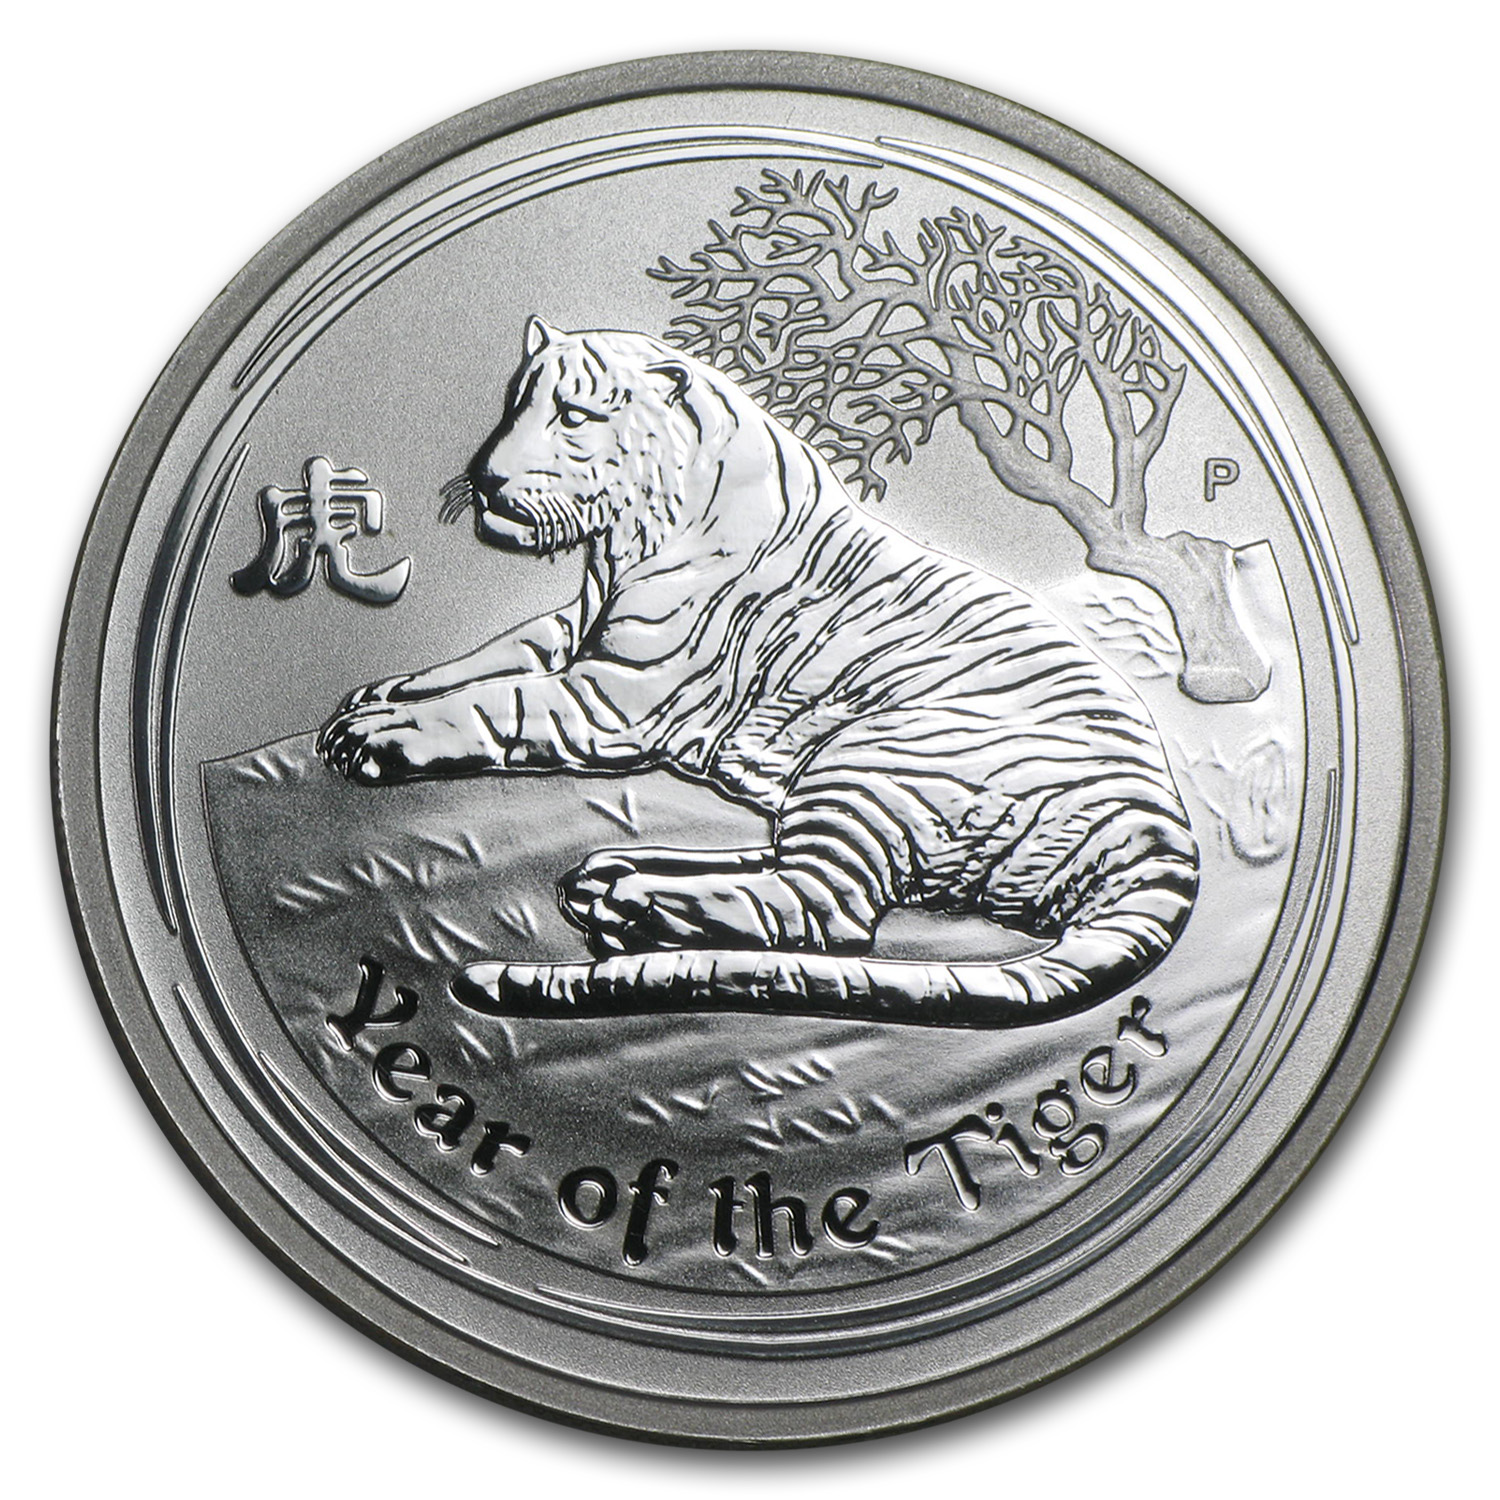 Australia $ 0.5 Lunar Series II Tiger 2010 1/2 oz .999 Silver Coin 